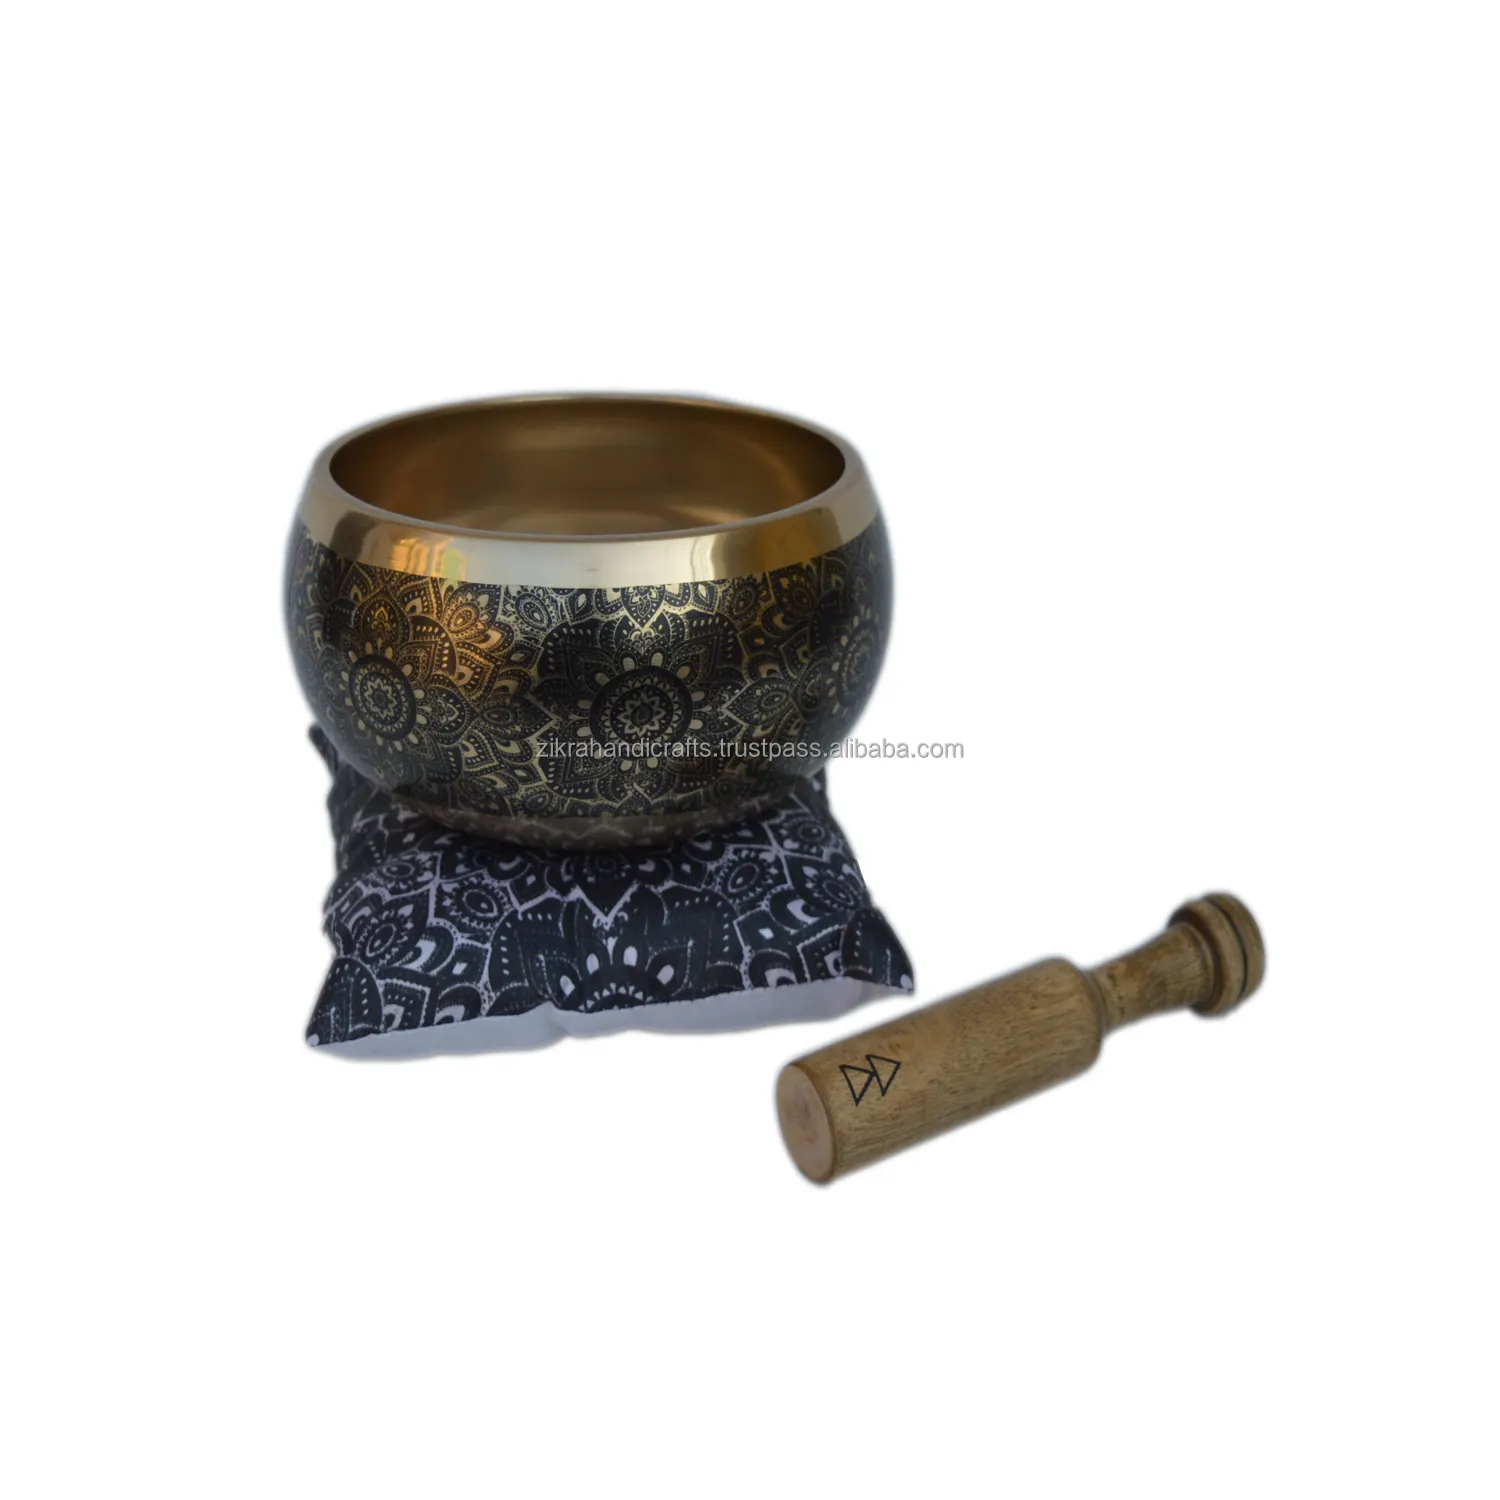 금속 그릇 수제 디자인 금속 황동 디자인 골동품 그릇 여러 색상 및 모양의 디자인 노래 그릇